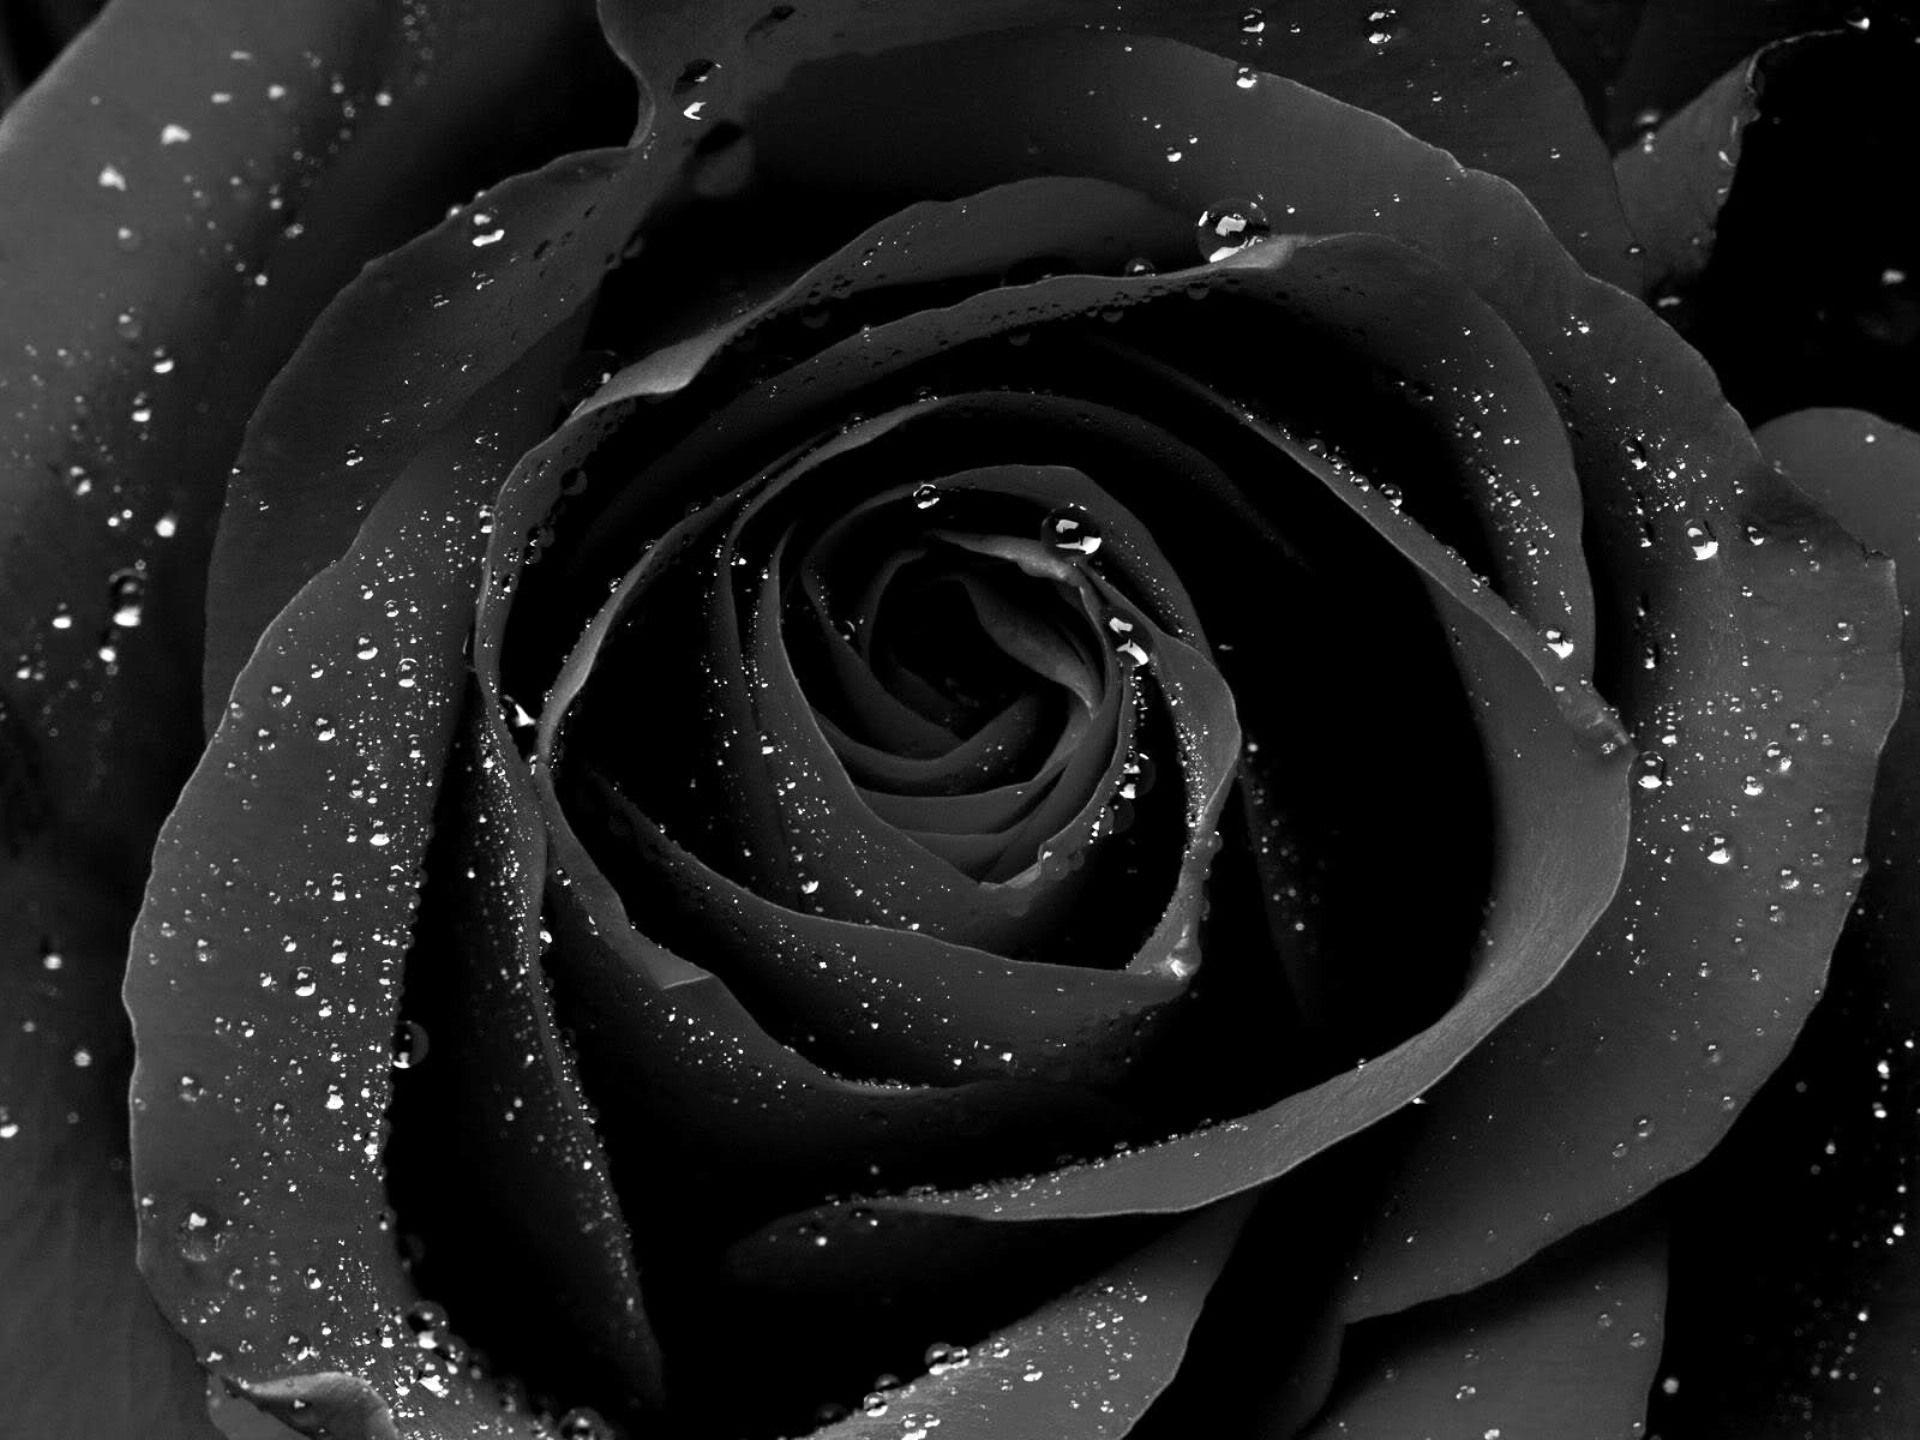 Beautiful Black Rose